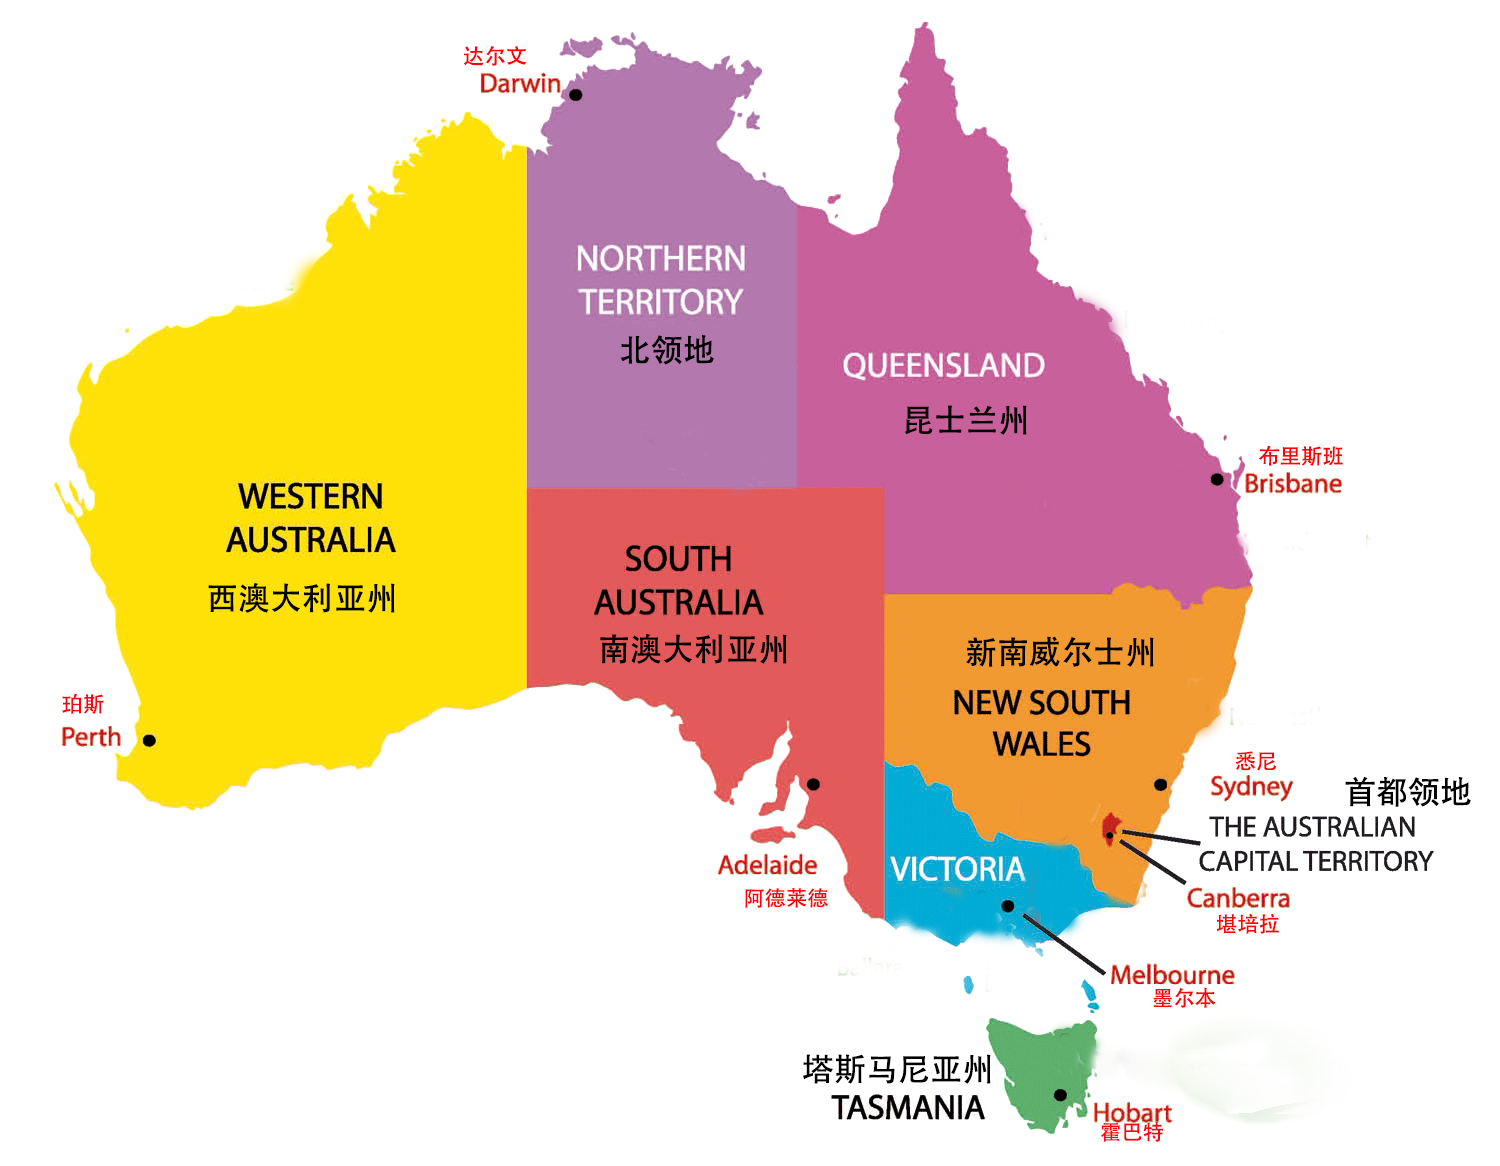               :澳大利亚区域分布